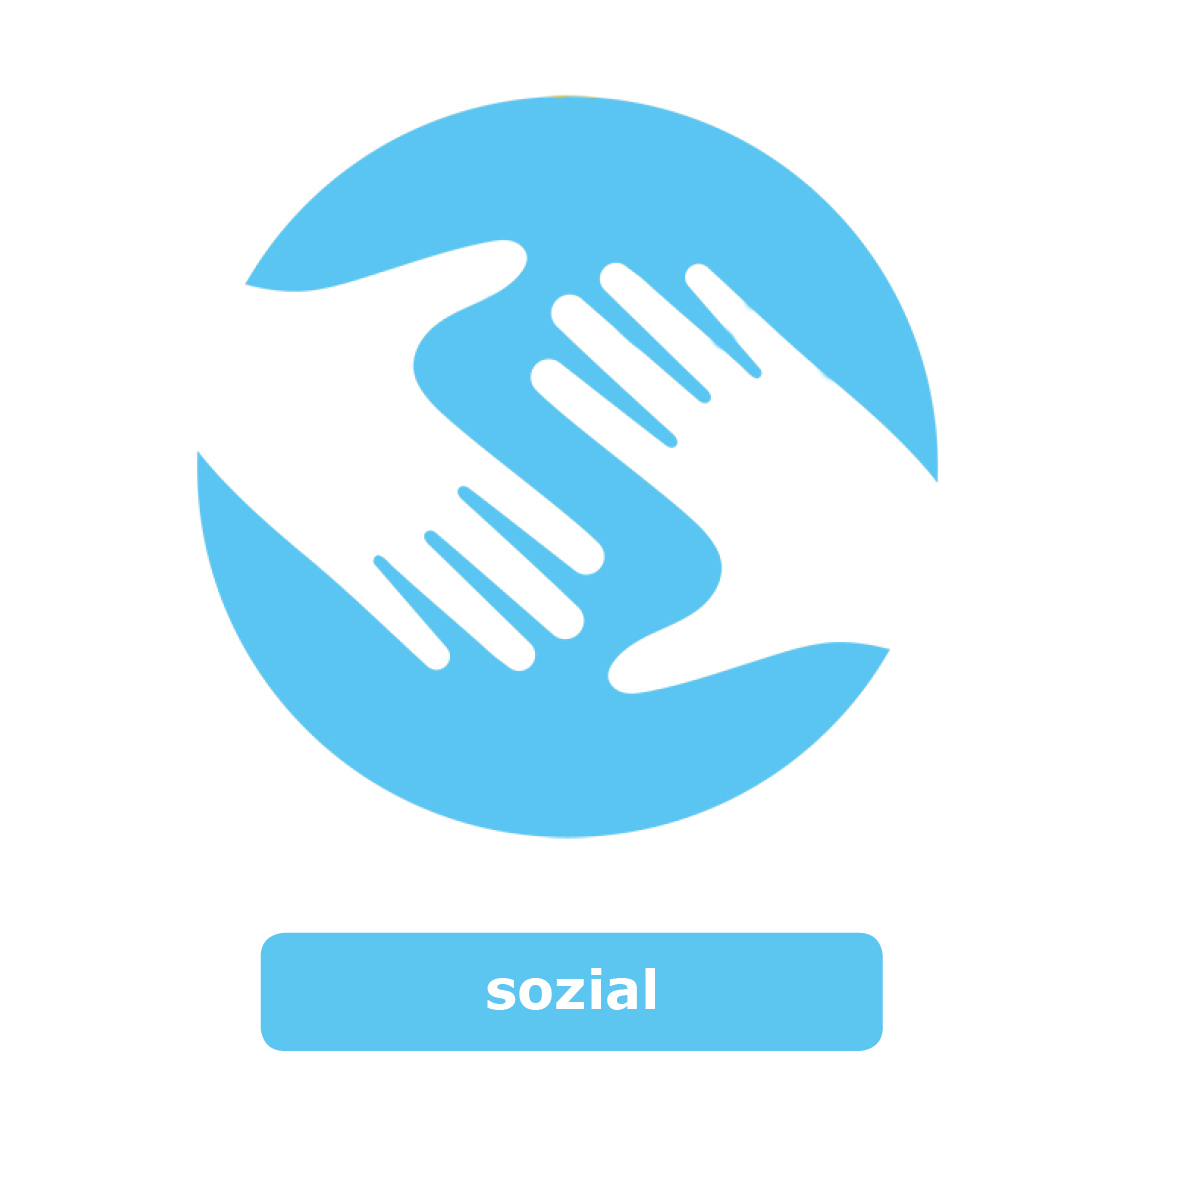 Ein rundes blaues Symbol mit zwei weißen Händen in der Mitte. Das Logo steht für den Wert Sozial